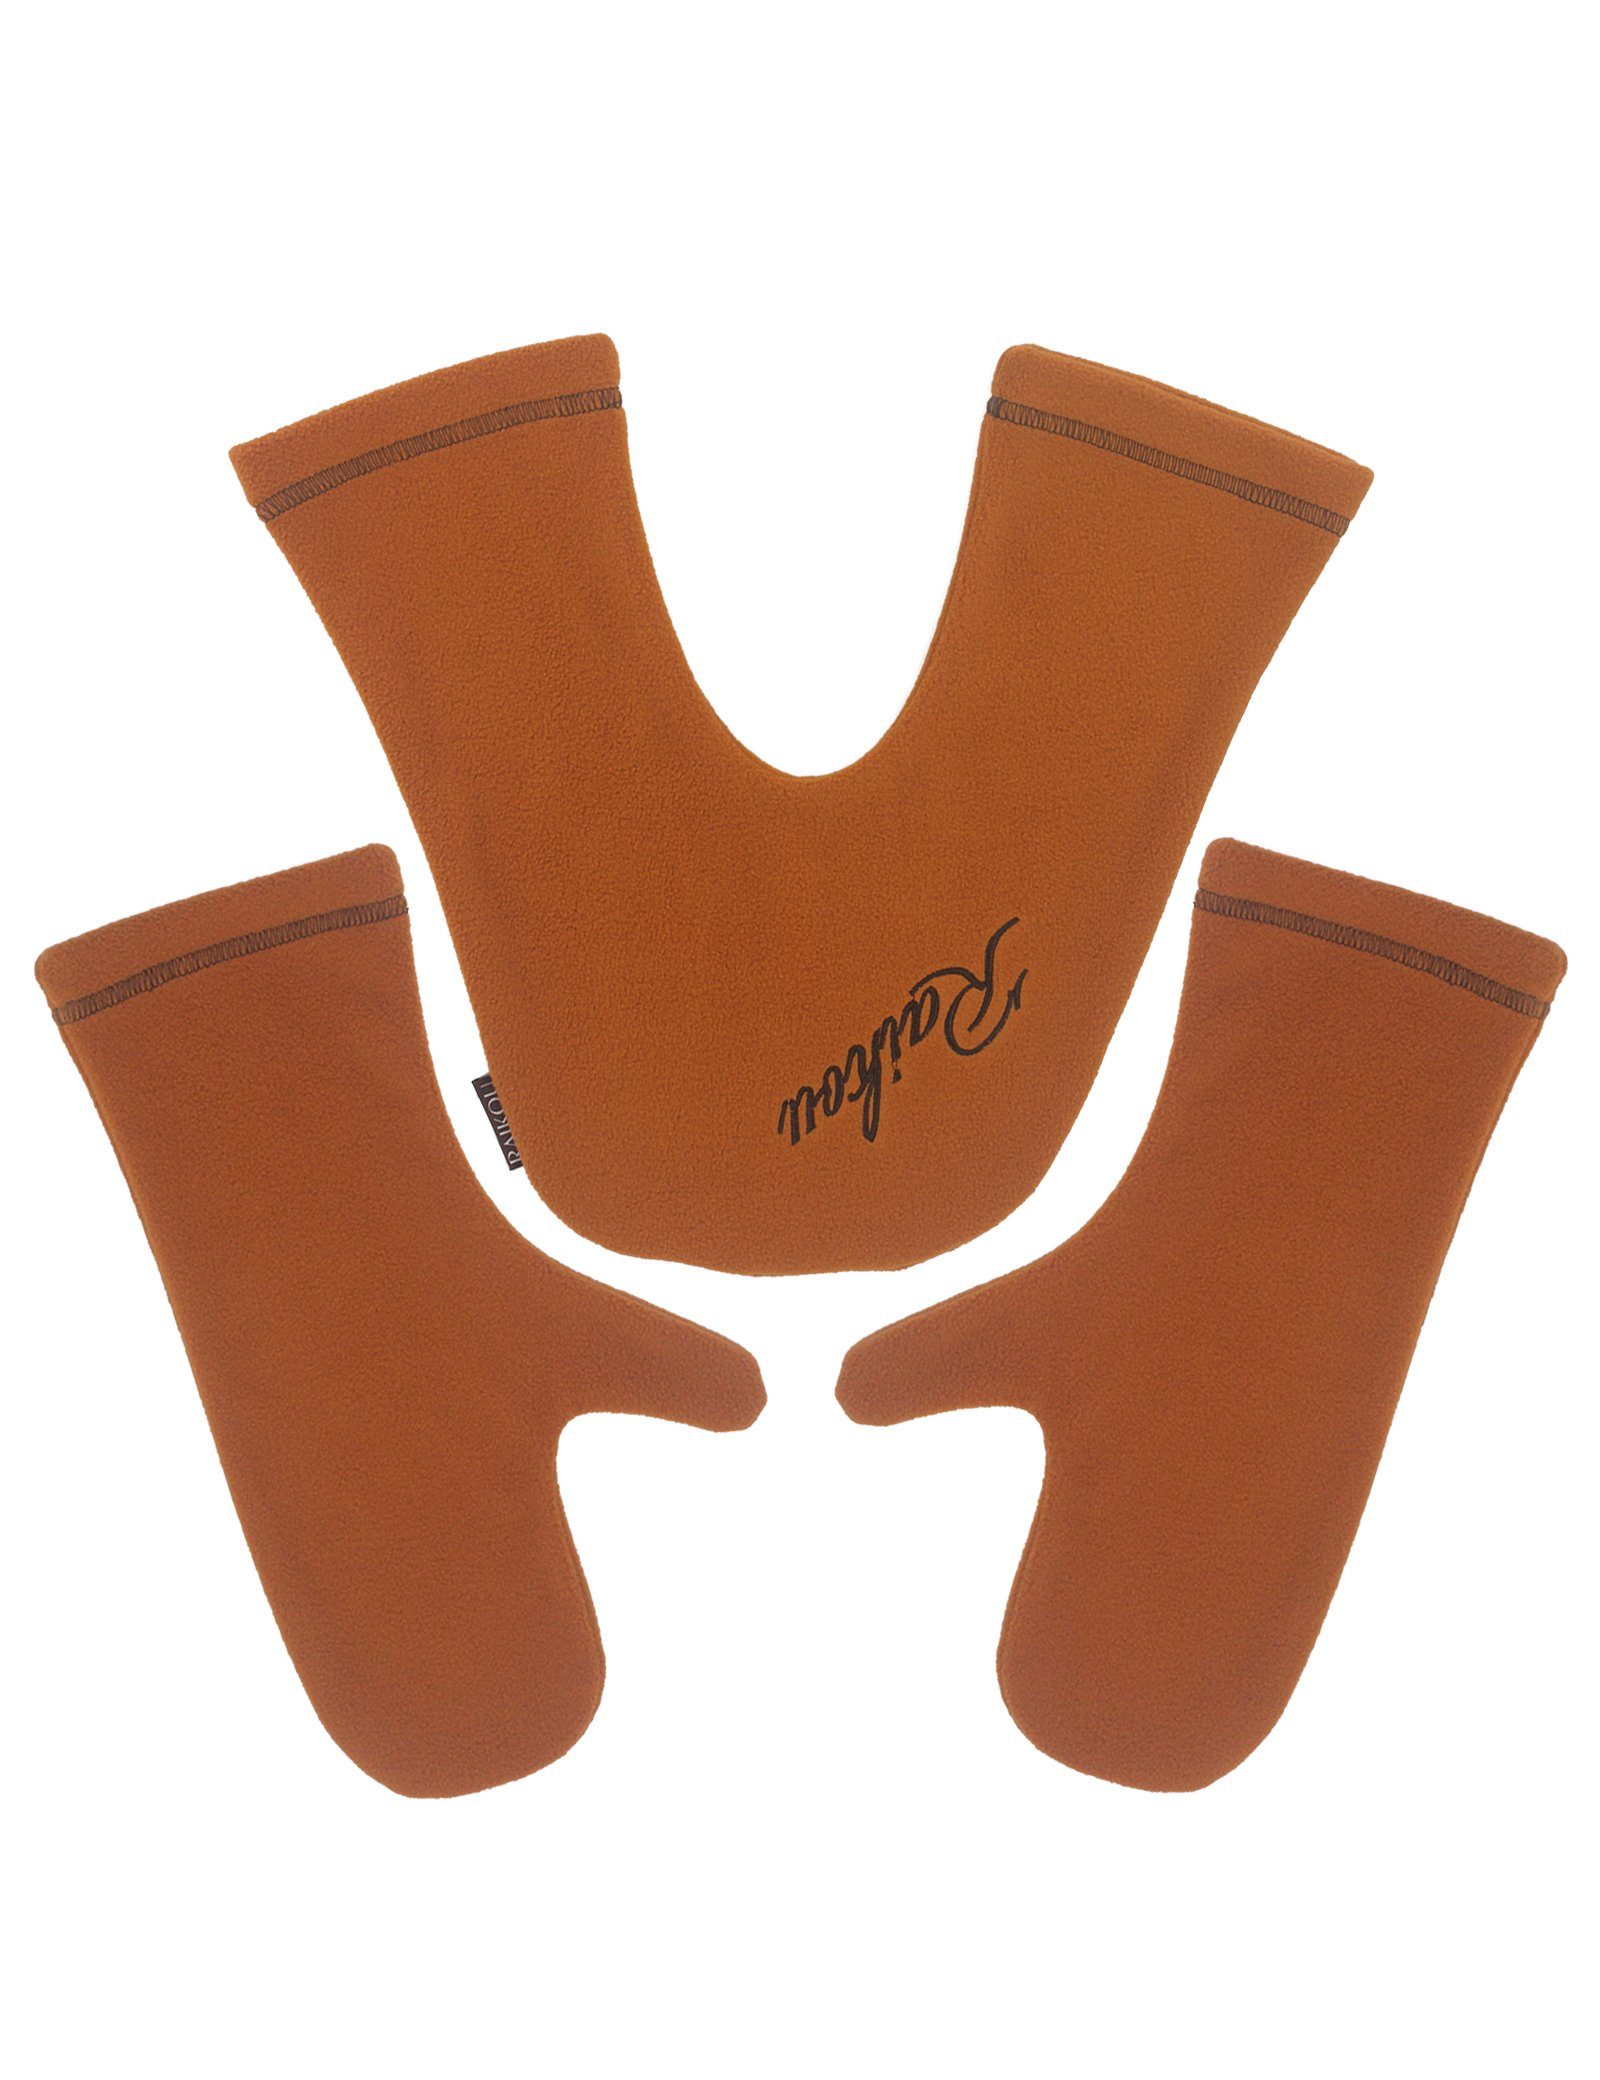 RAIKOU Fleecehandschuhe warme Partnerhandschuhe zum Händchenhalten im Winter (1 Set) immer zusamen Orange | Fleecehandschuhe